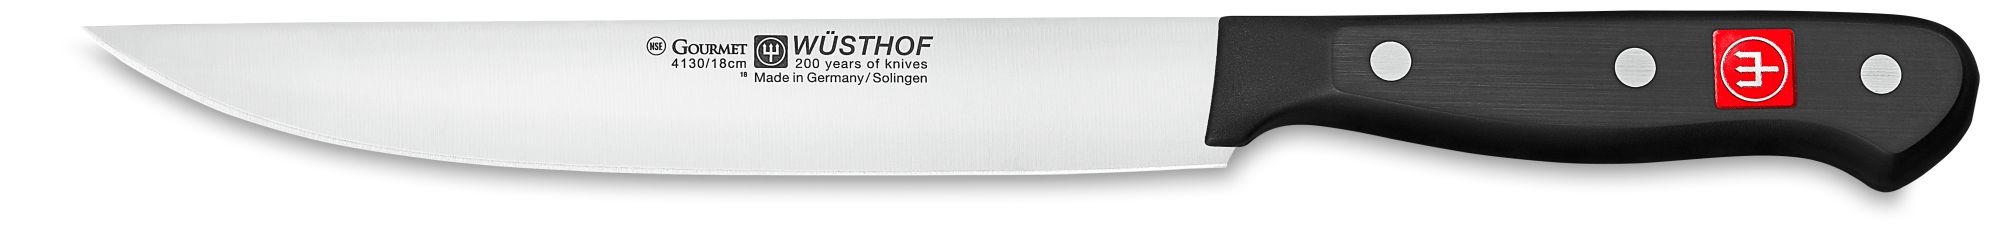 Wüsthof Gourmet Zubereitungsmesser 18cm